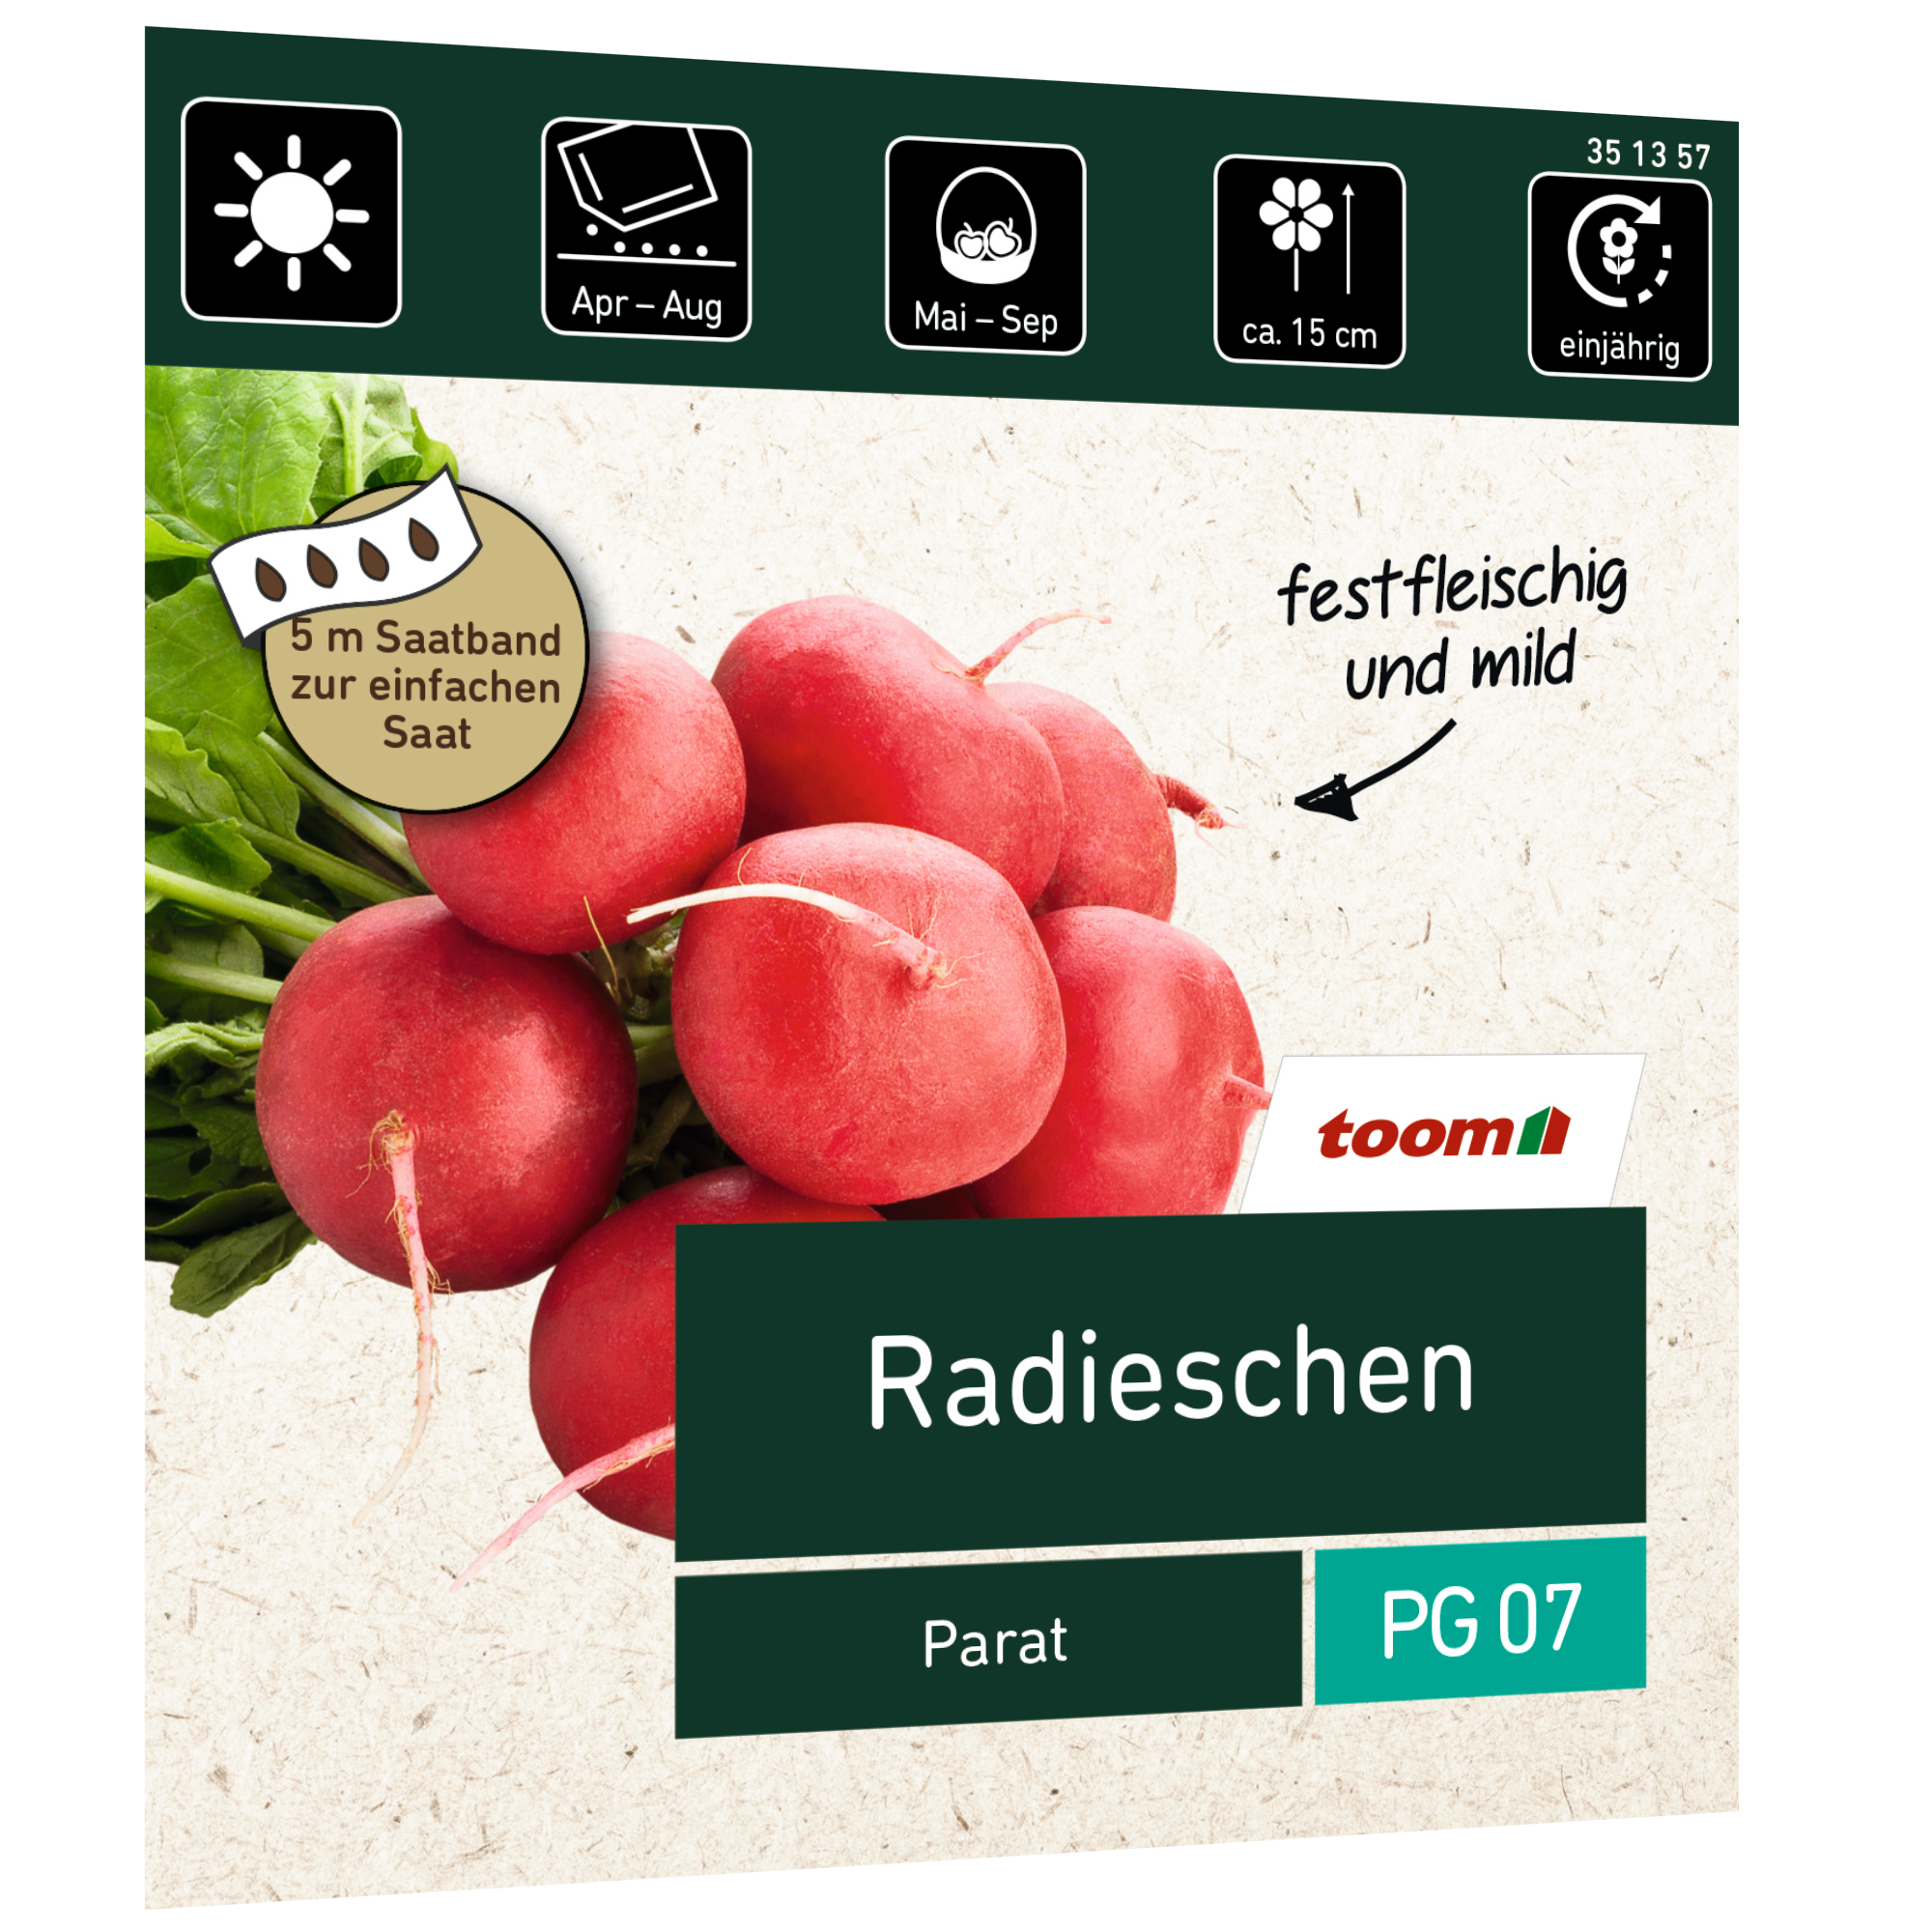 Radieschen 'Parat' Saatband 5 m + product picture